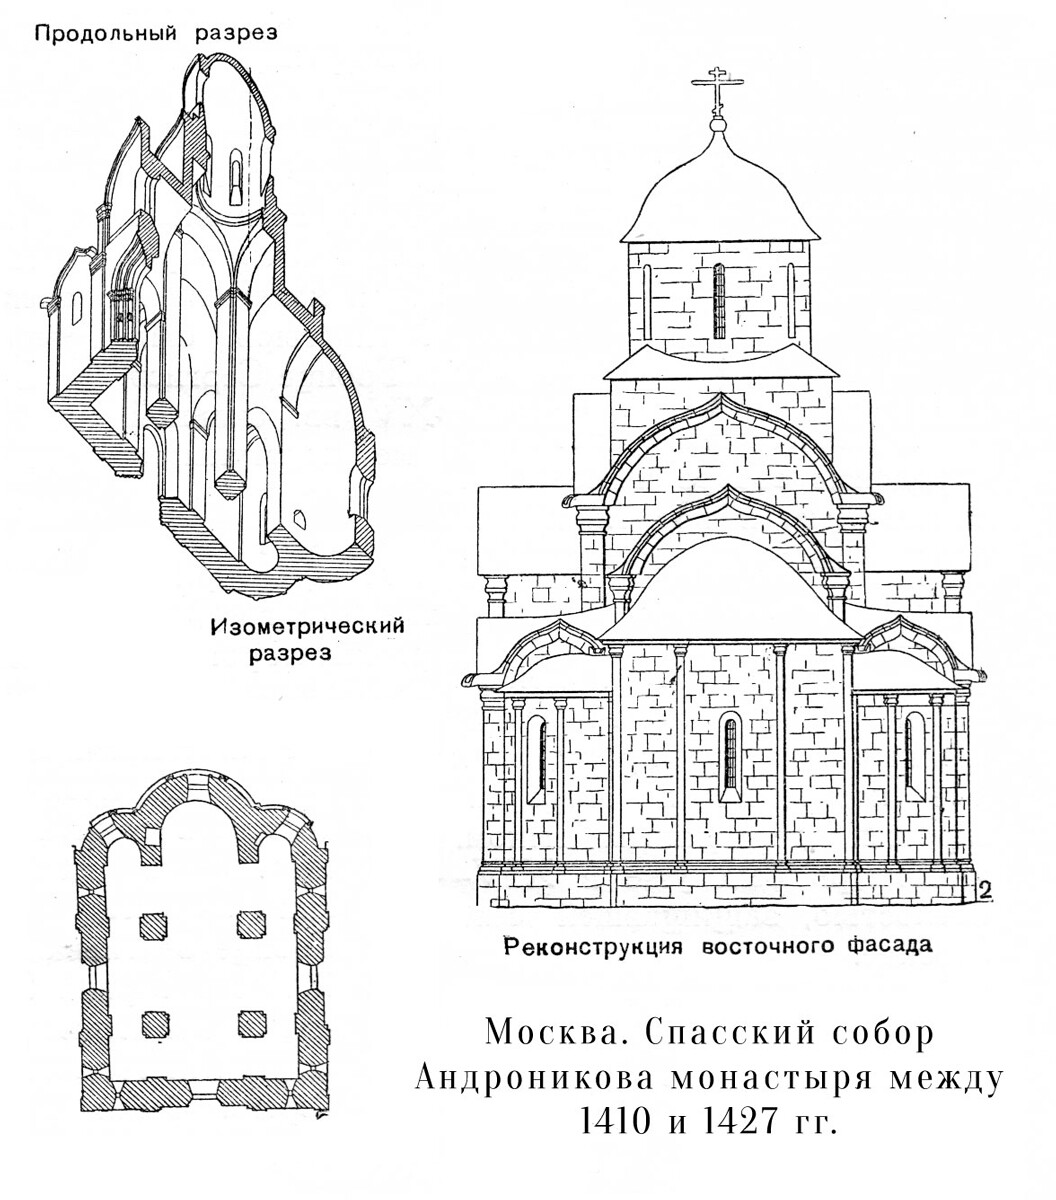 The Savior Cathedral, scheme